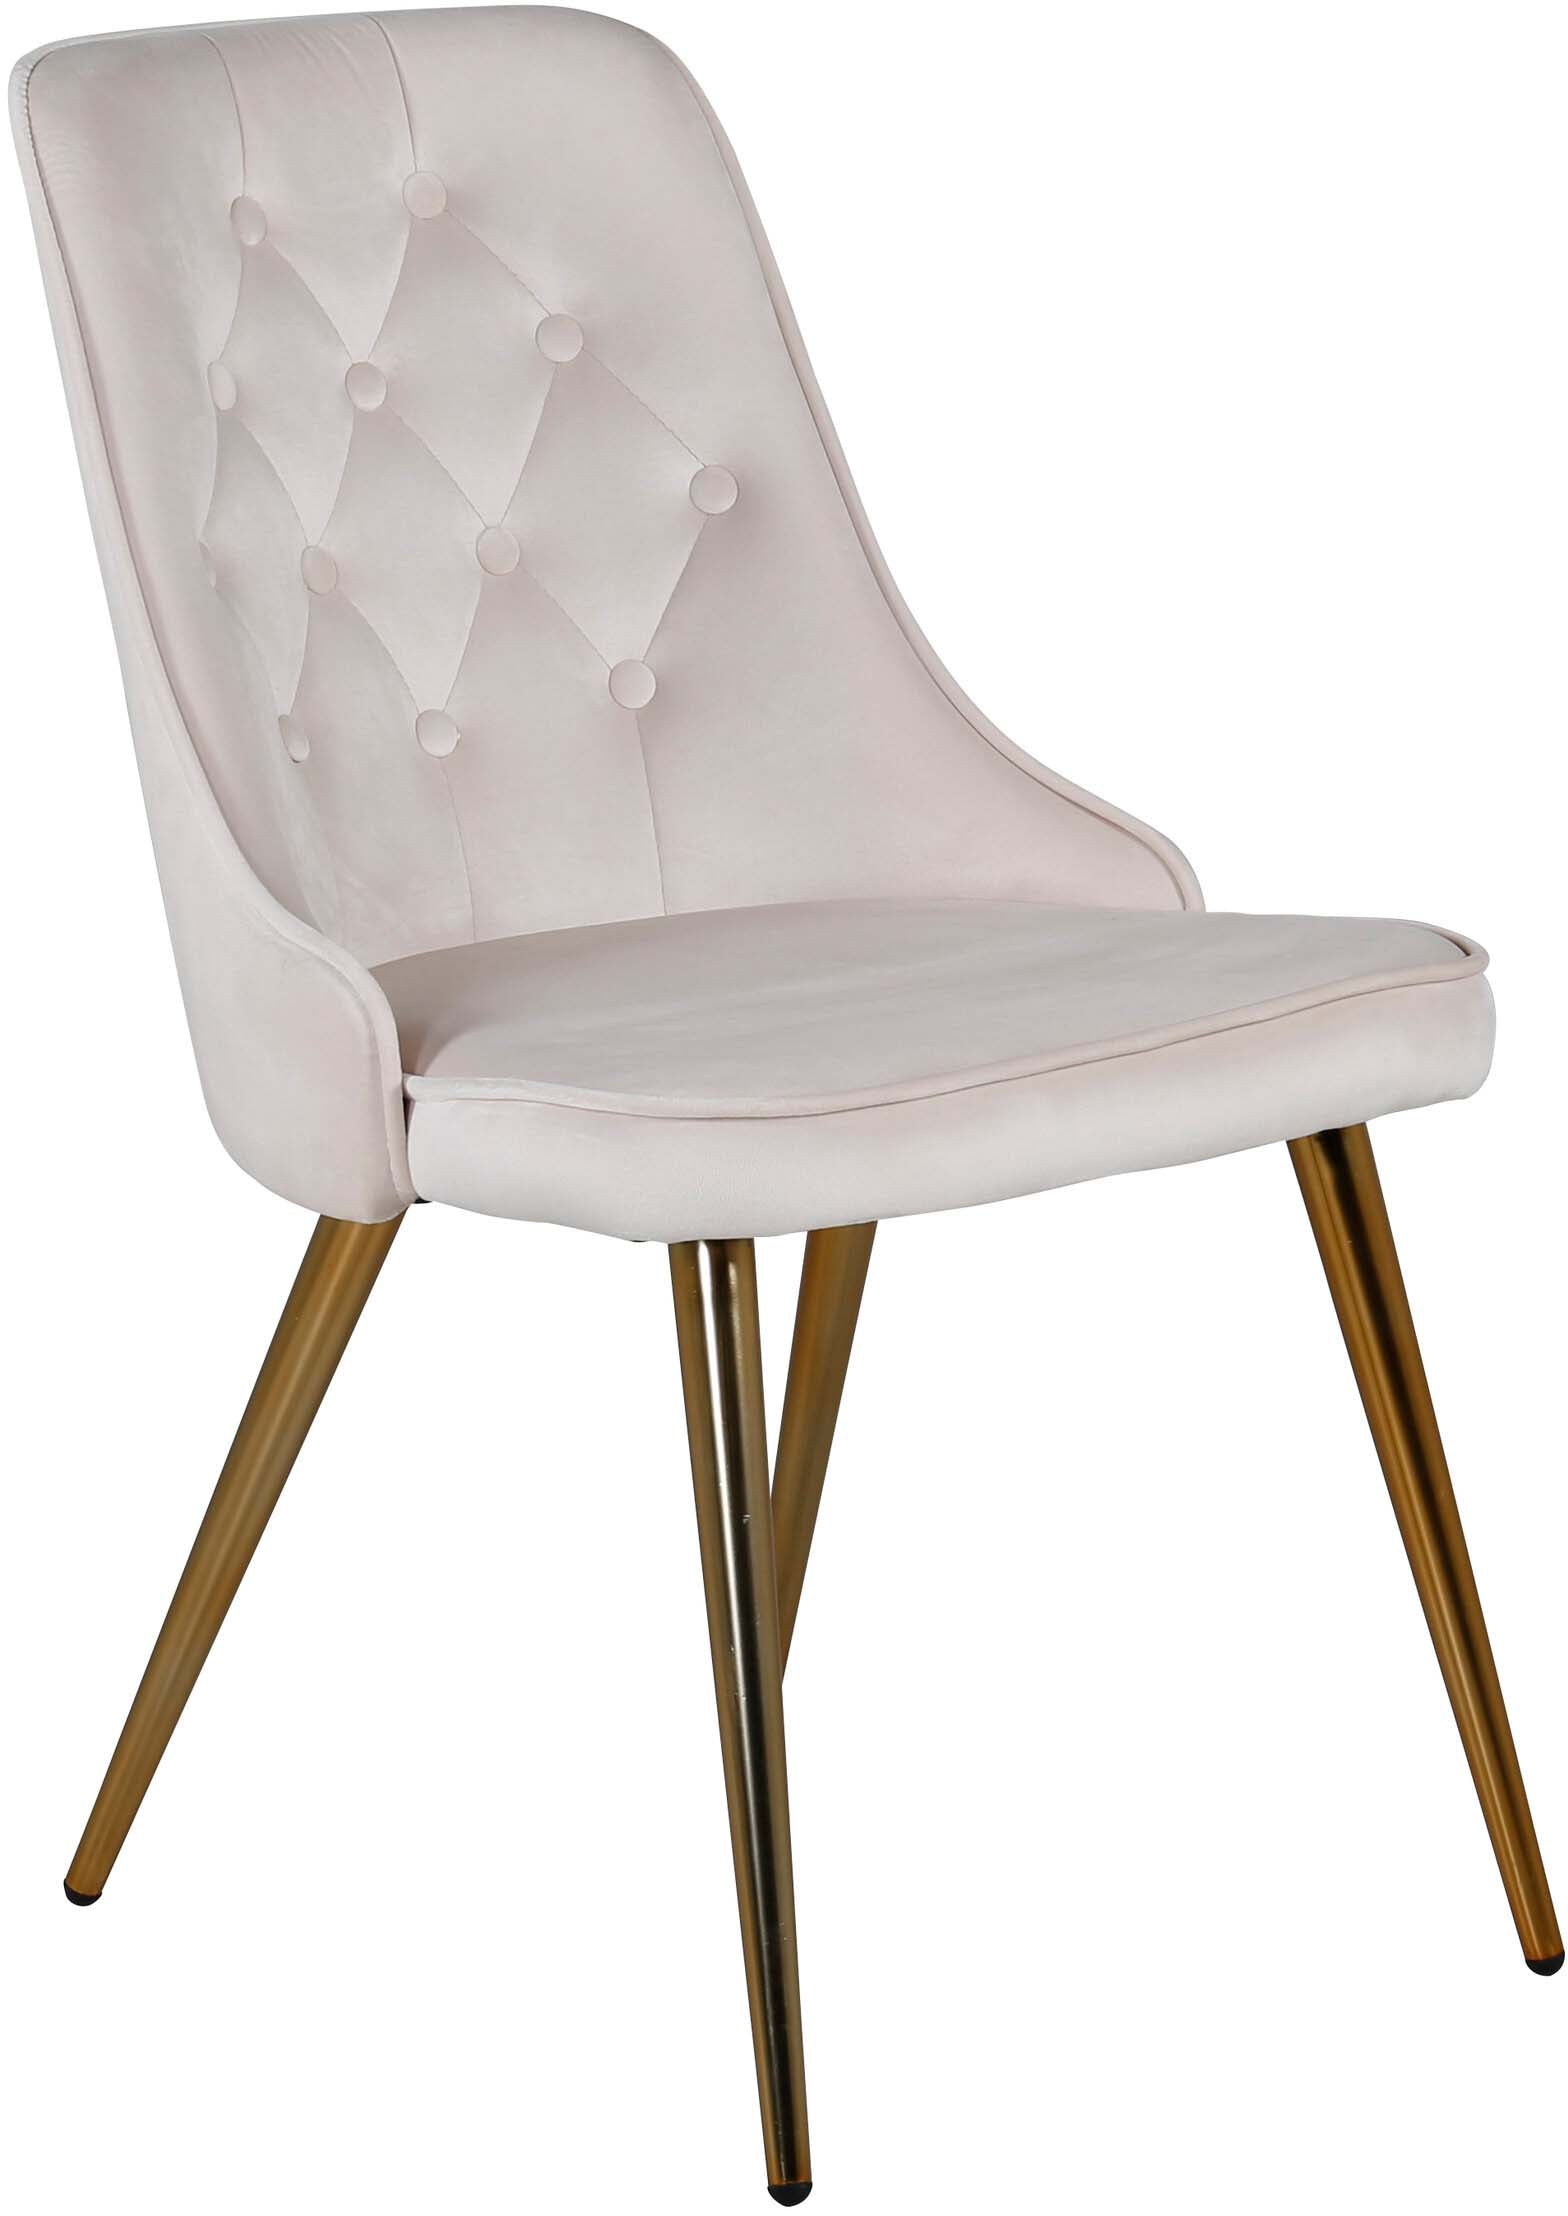 Velvet Deluxe Stuhl in Beige / Gold präsentiert im Onlineshop von KAQTU Design AG. Stuhl ist von Venture Home